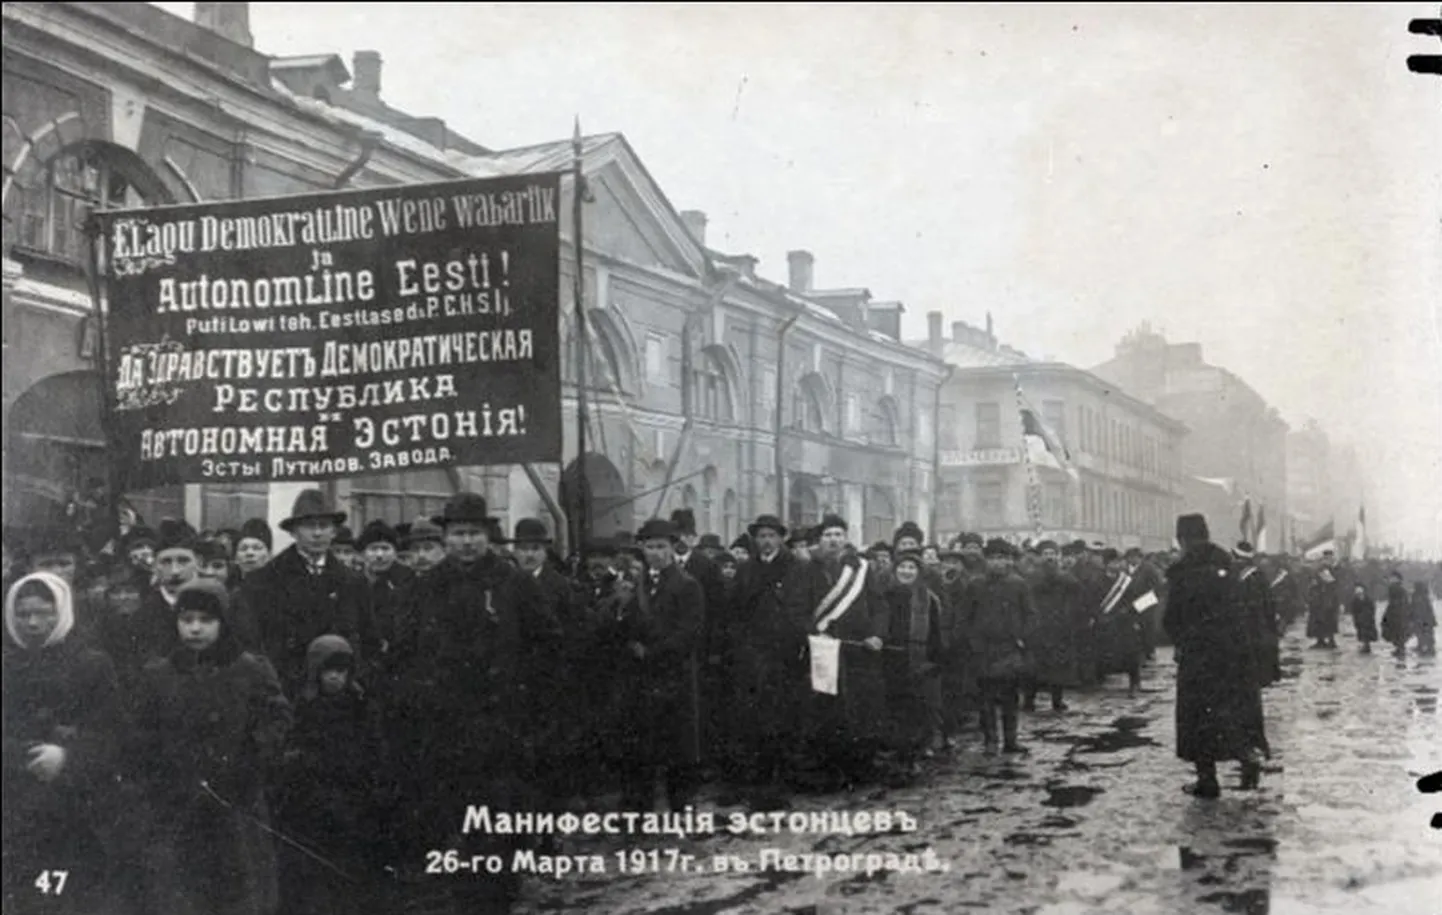 Petrogradi eestlaste meeleavaldus Eesti autonoomia toetuseks.